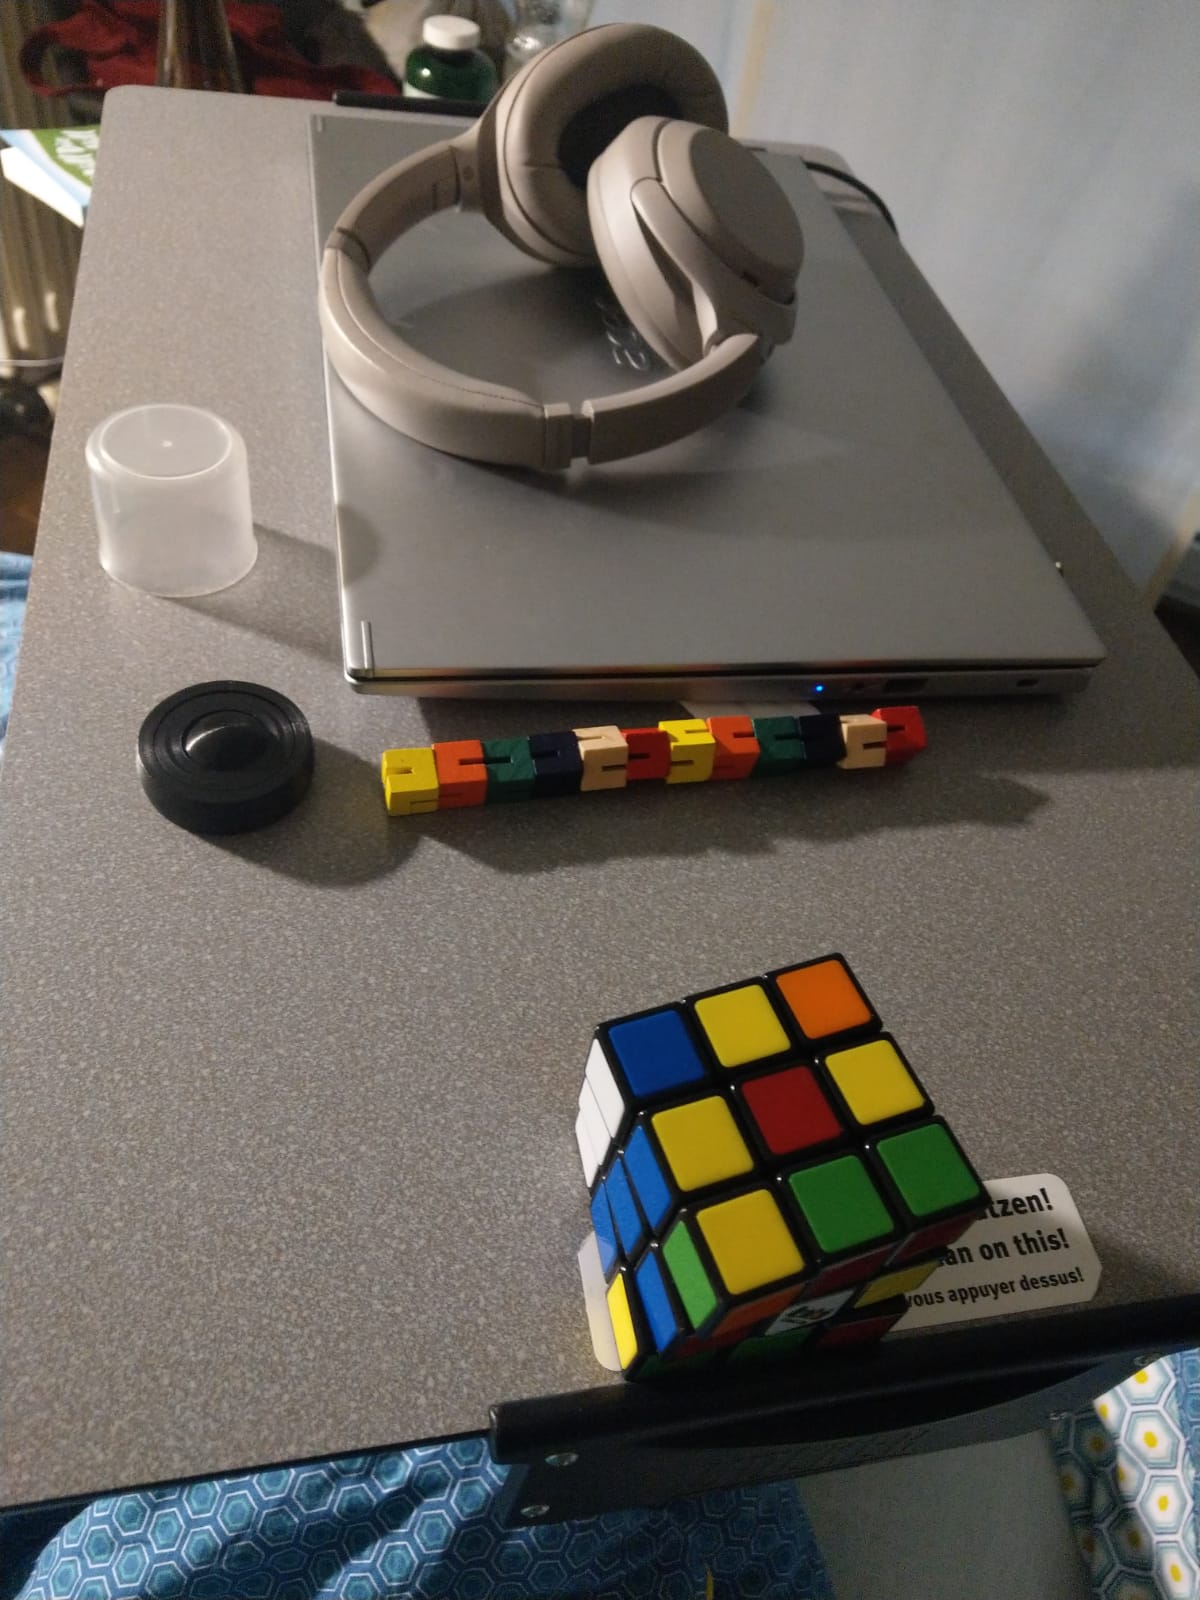 Bild vom Nachttisch am Krankenhaus. Darauf ein Laptop, Active Noise Canceling Kopfhörer, Stim Toys und ein Rubic's Cube.